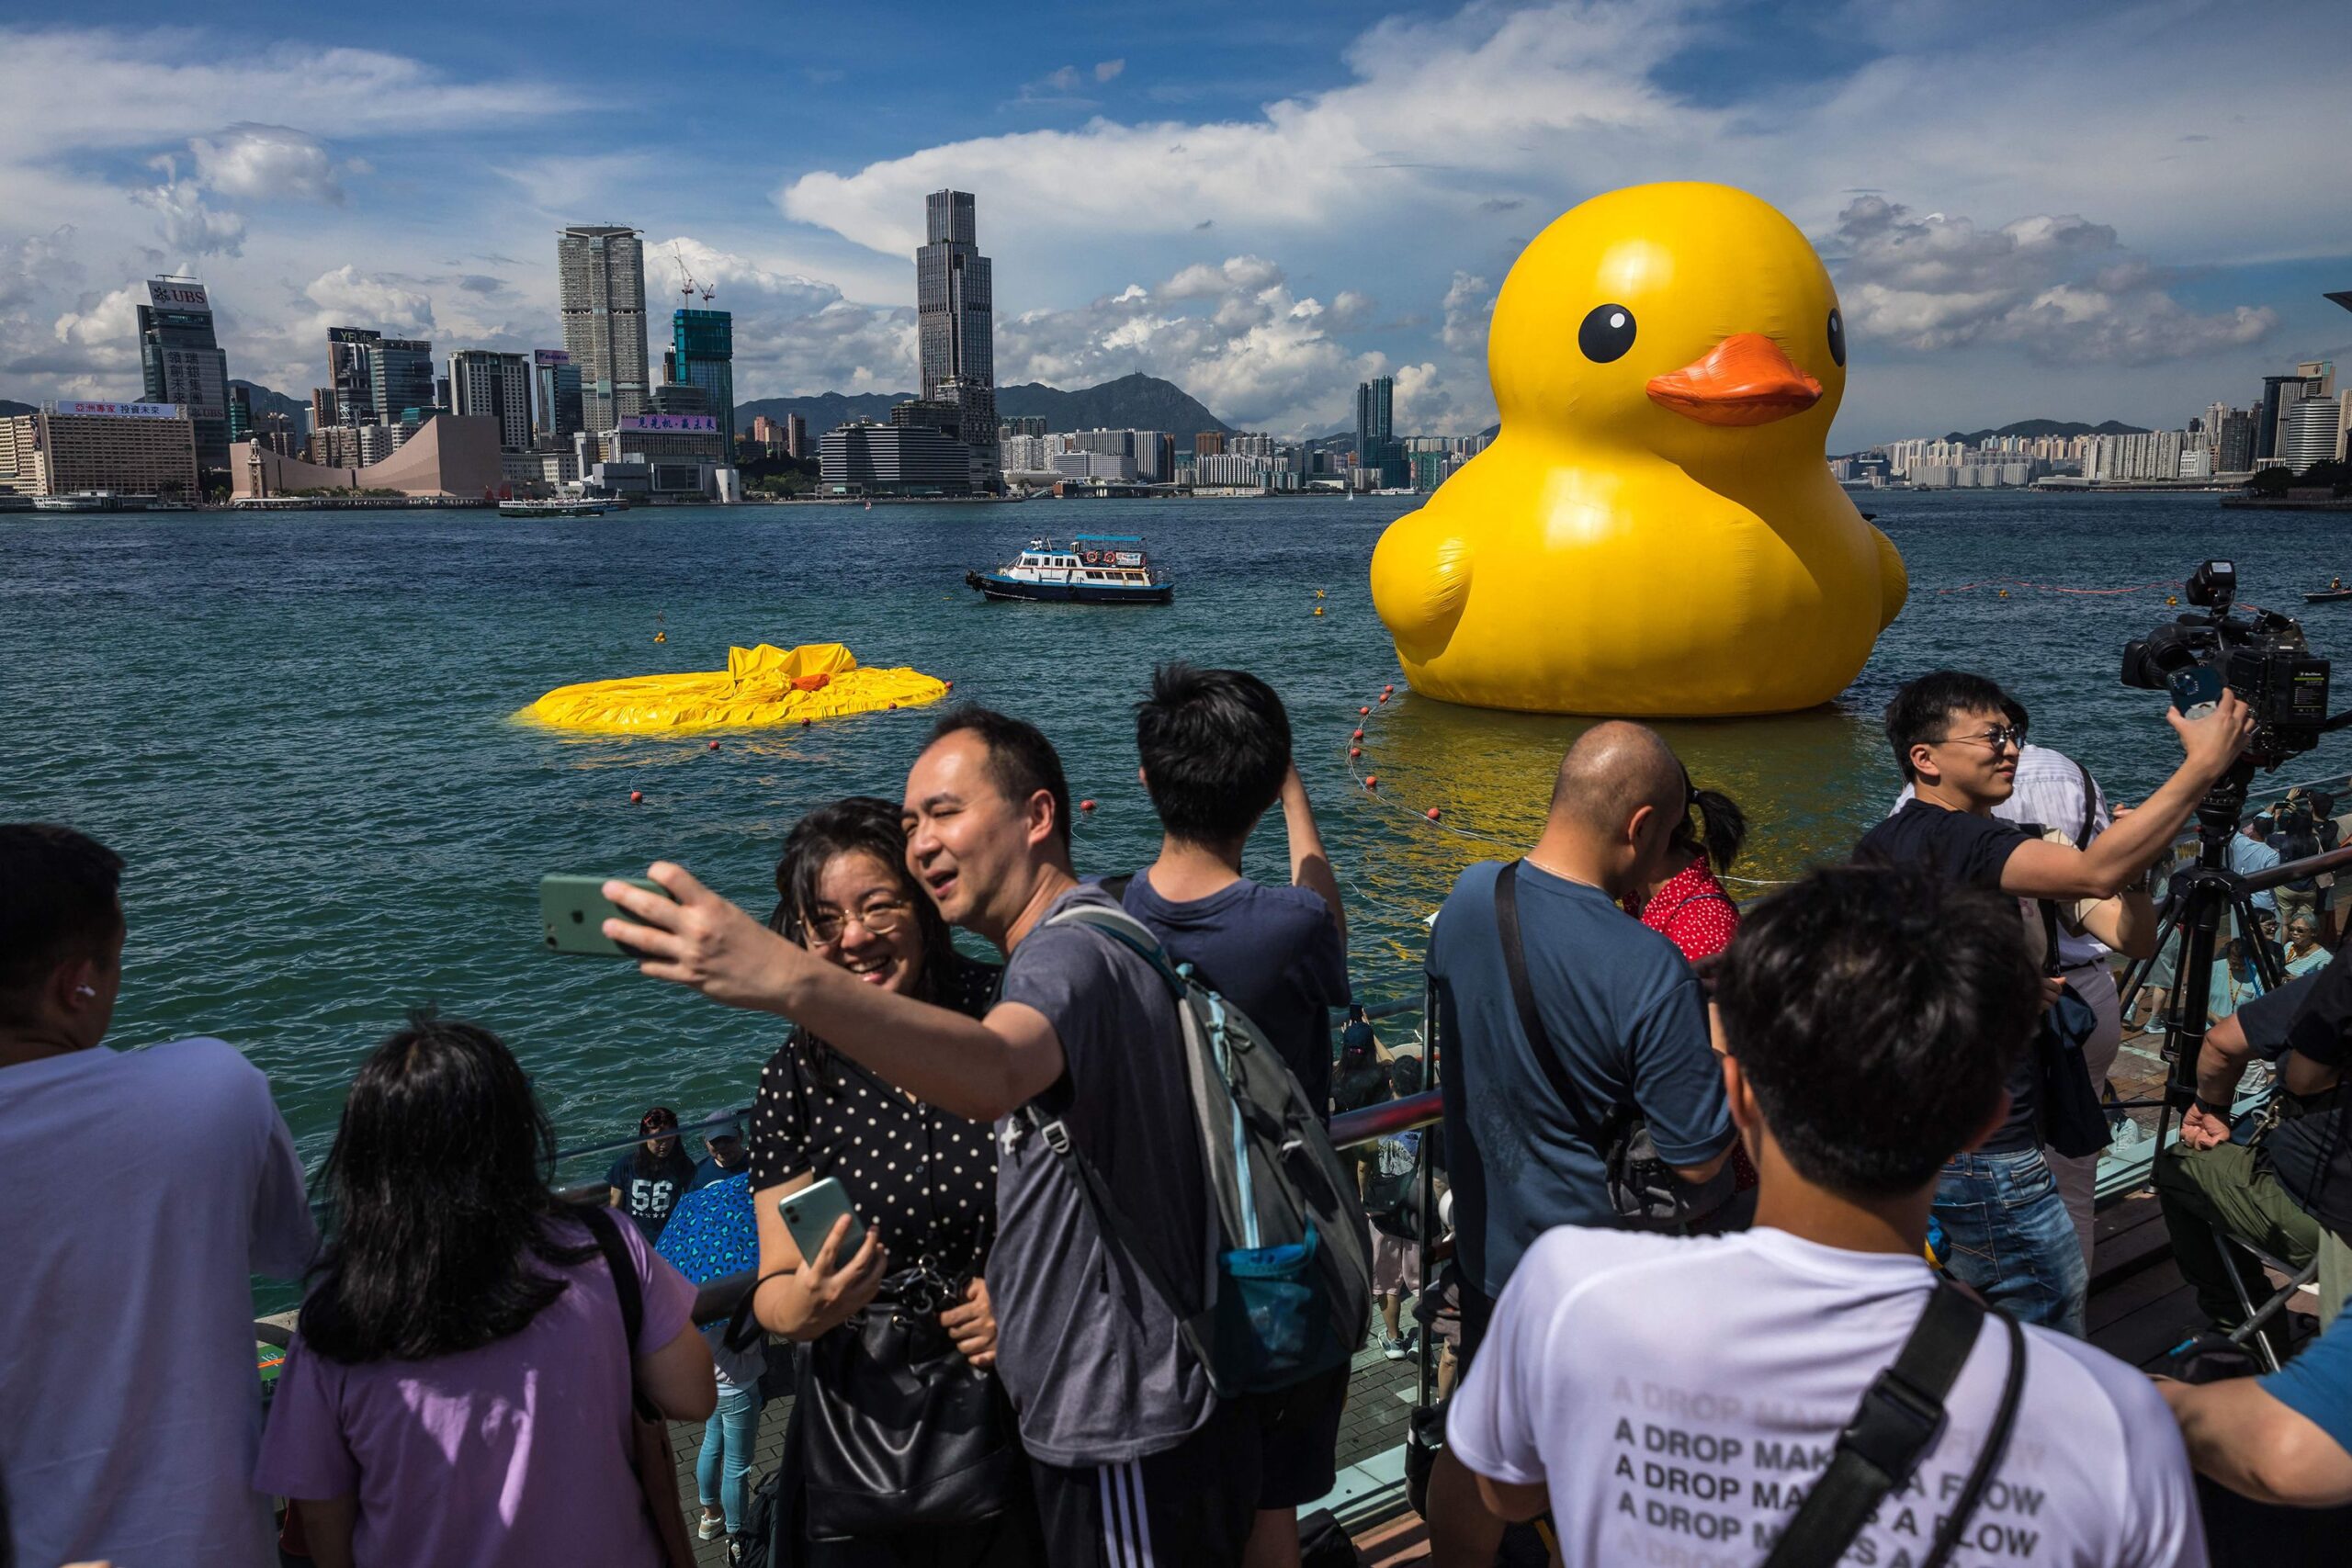 giant ducks in Hon Kong's harbor...